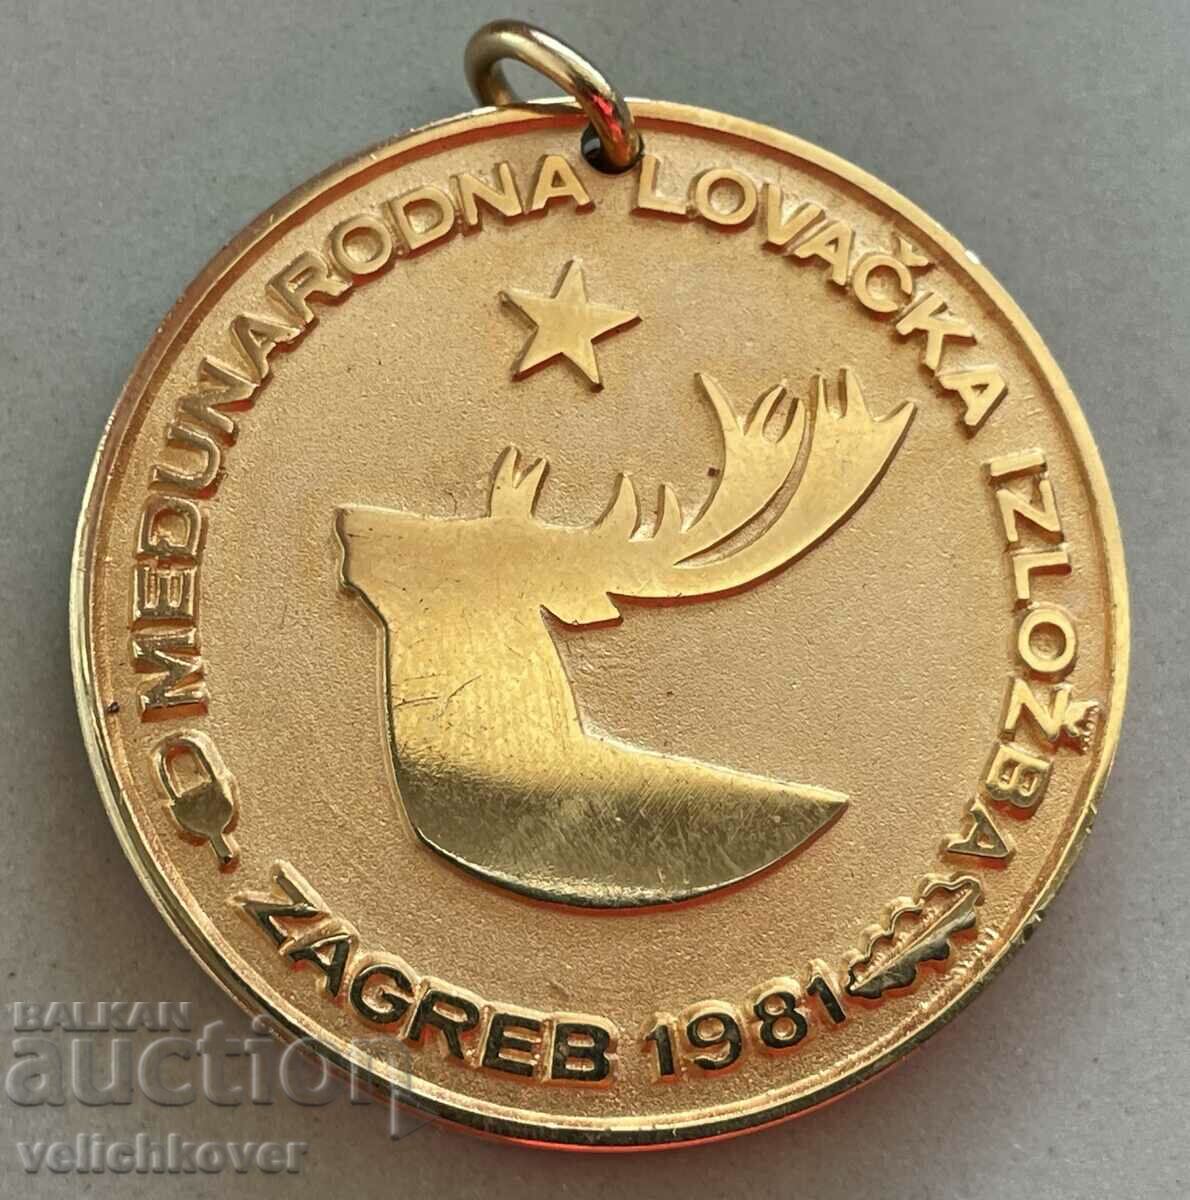 35186 Югославия златен медал  Ловно изложение Загреб 1981